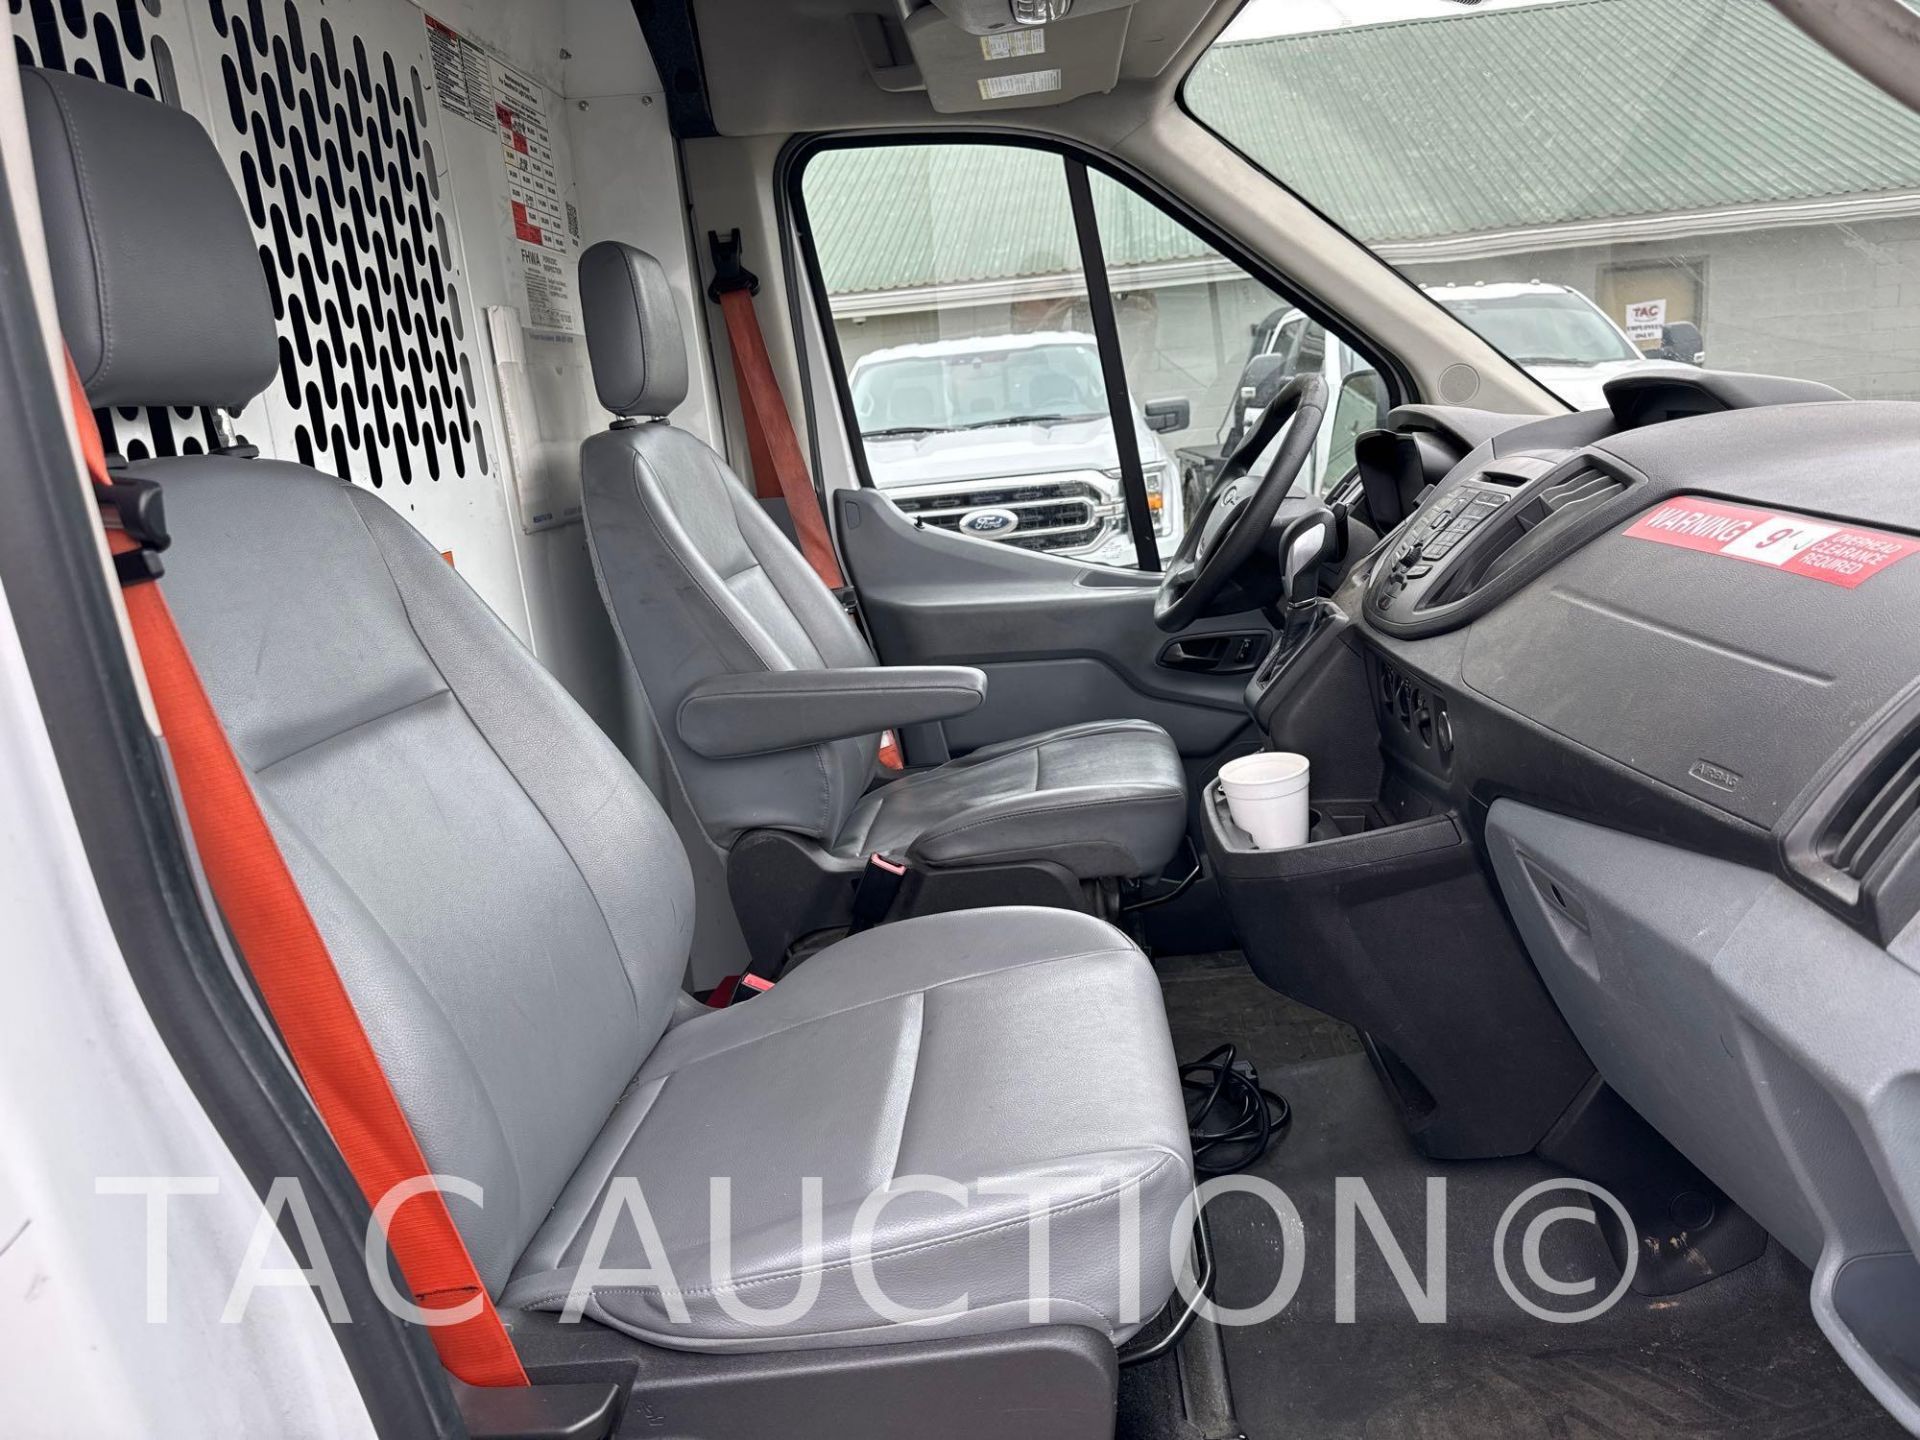 2019 Ford Transit 150 Cargo Van - Image 17 of 41